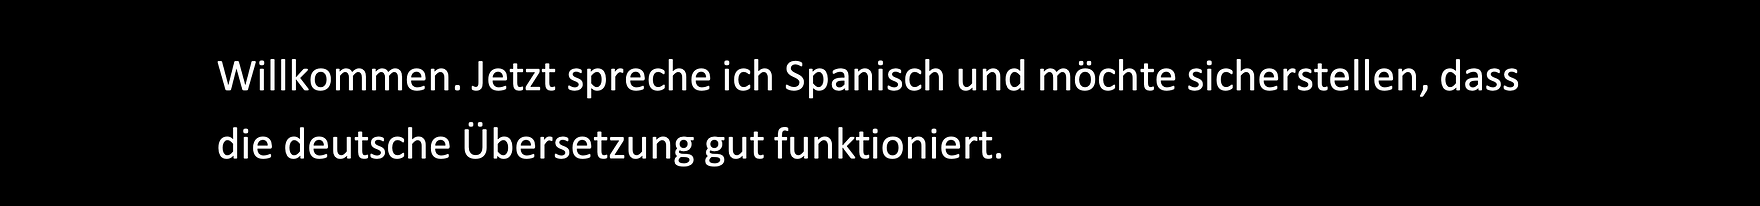 Beispiel für deustsche Übersetzung Bildunterschriften (gesprochene Spanisch und Deustche Untertiteln) in PowerPoint. 